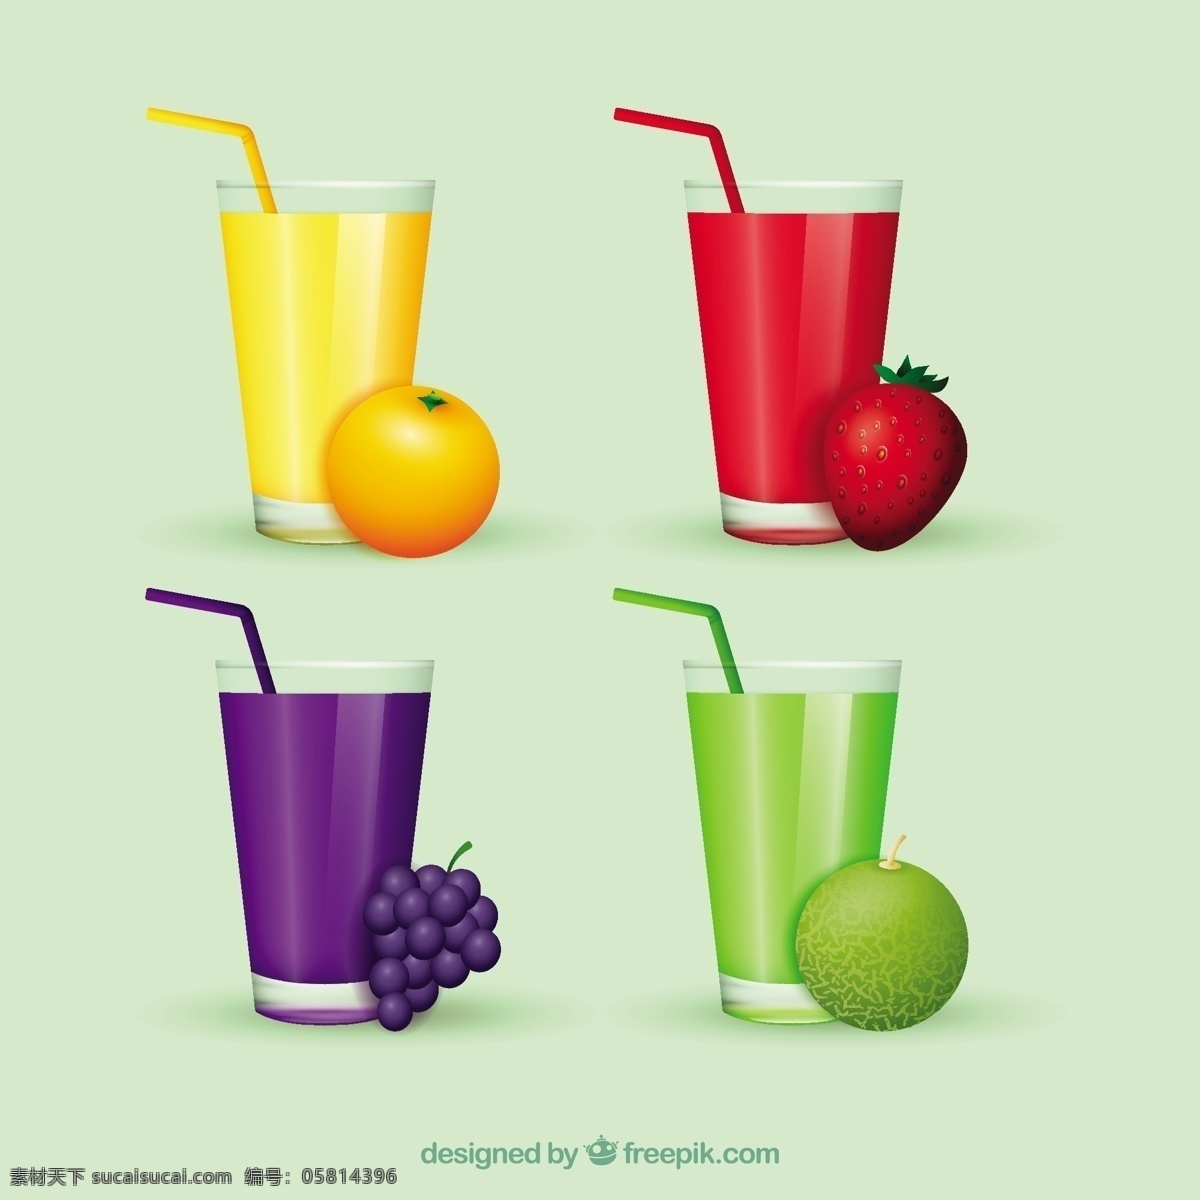 实际 美味 果汁 行业 食品 夏季 水果 颜色 橙子 饮料 天然 健康 草莓 食用 健康食品 葡萄 饮食 营养 橙汁 石灰